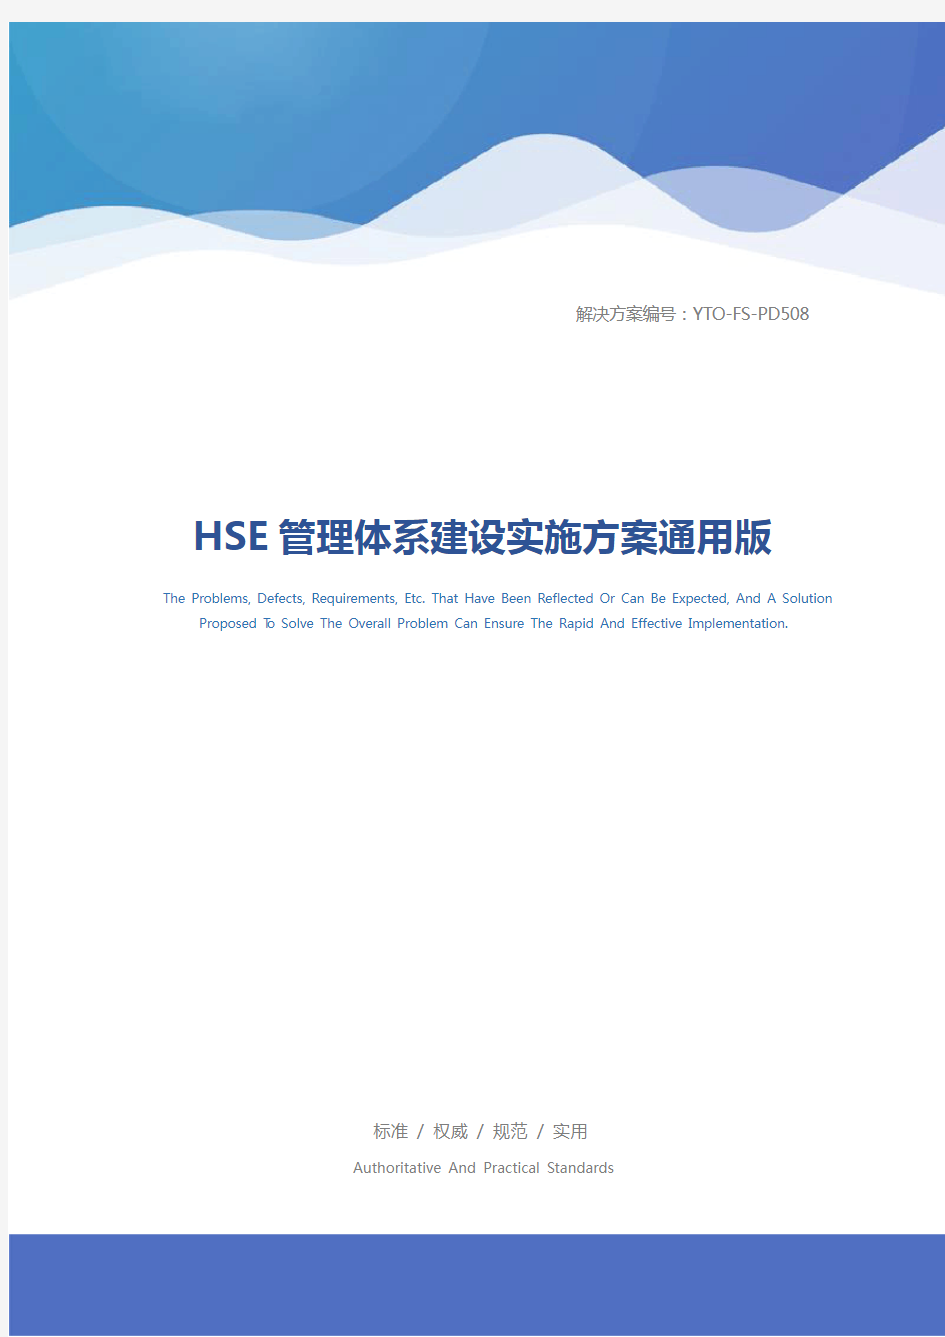 HSE管理体系建设实施方案通用版